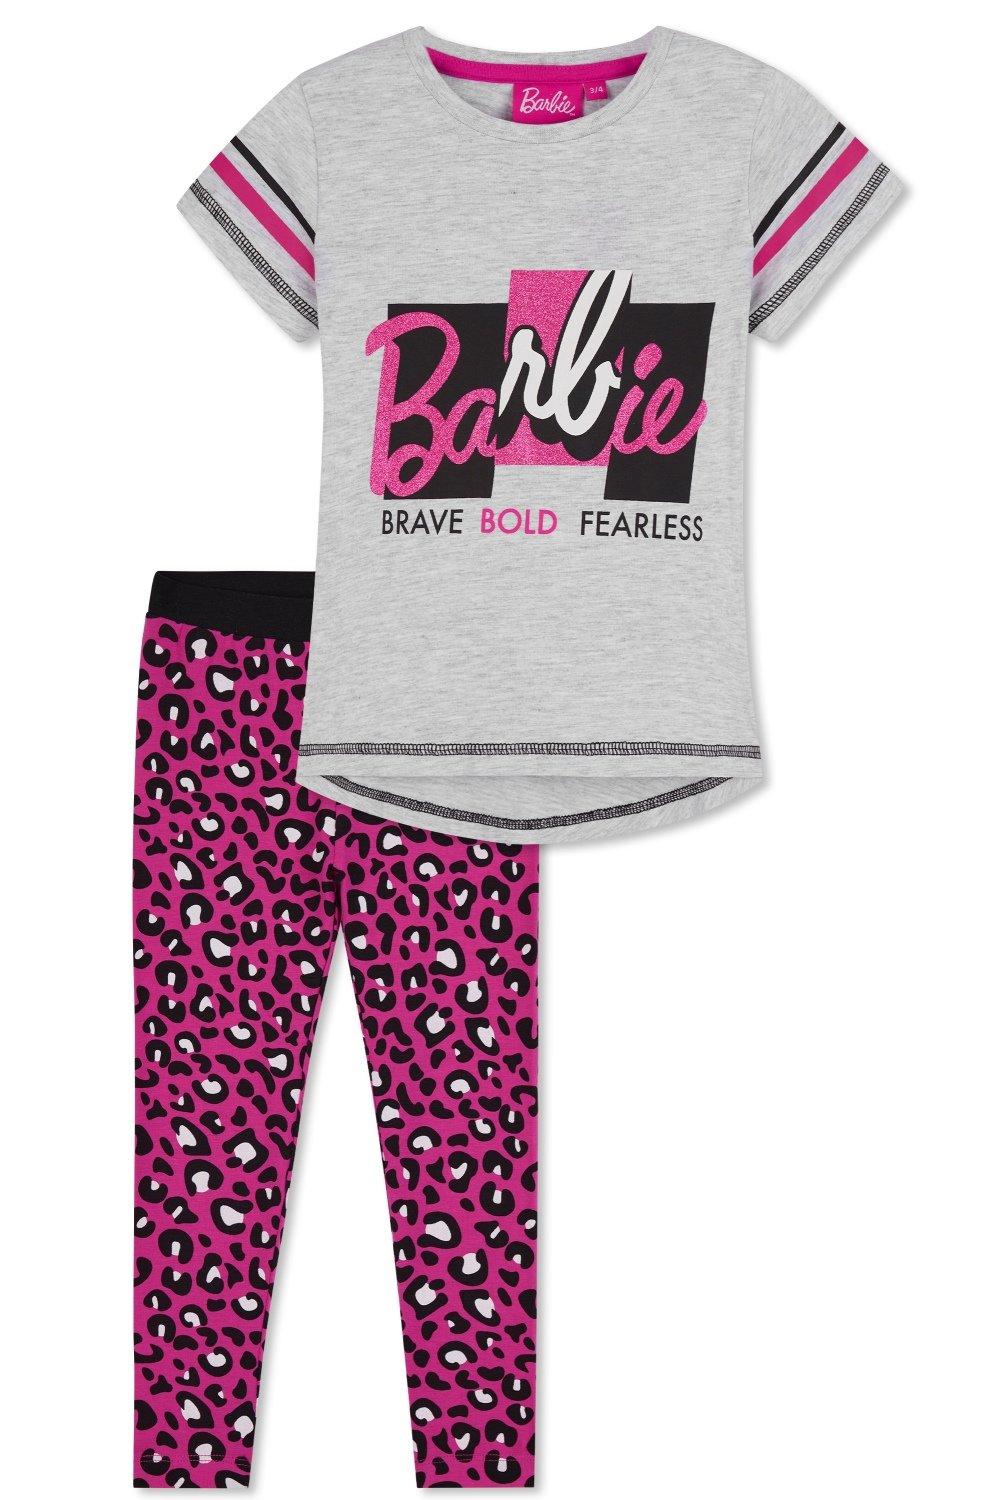 Футболка и леггинсы Barbie, мультиколор наклейка патч для одежды барби единорог 1